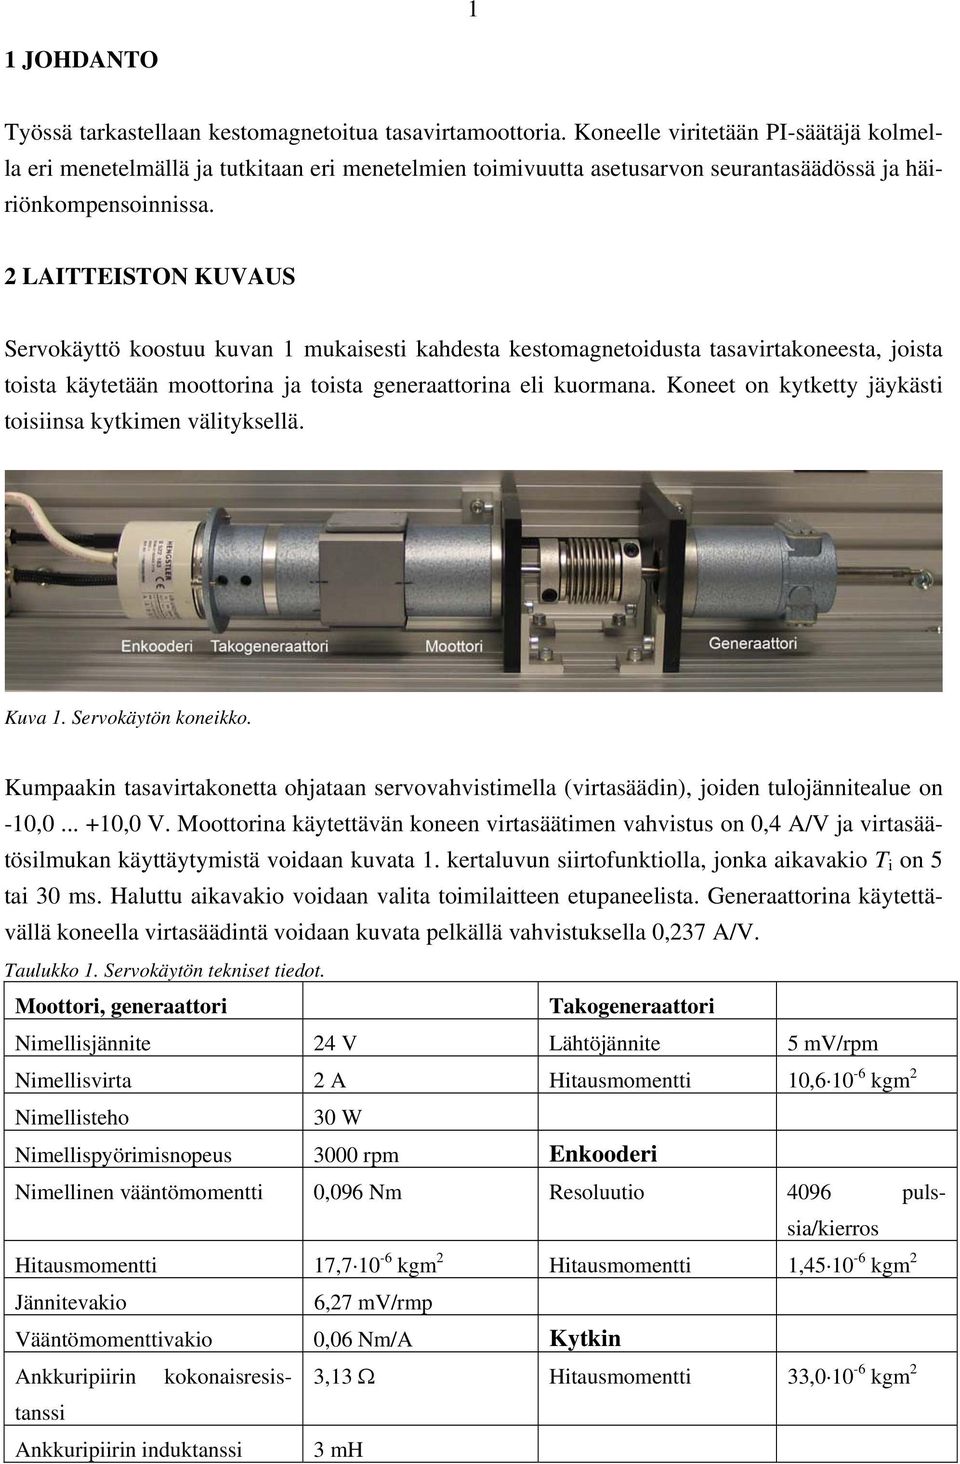 2 LITTEISTON UVUS Servokäyttö koostuu kuvan mukaisesti kahdesta kestomagnetoidusta tasavirtakoneesta, joista toista käytetään moottorina ja toista generaattorina eli kuormana.